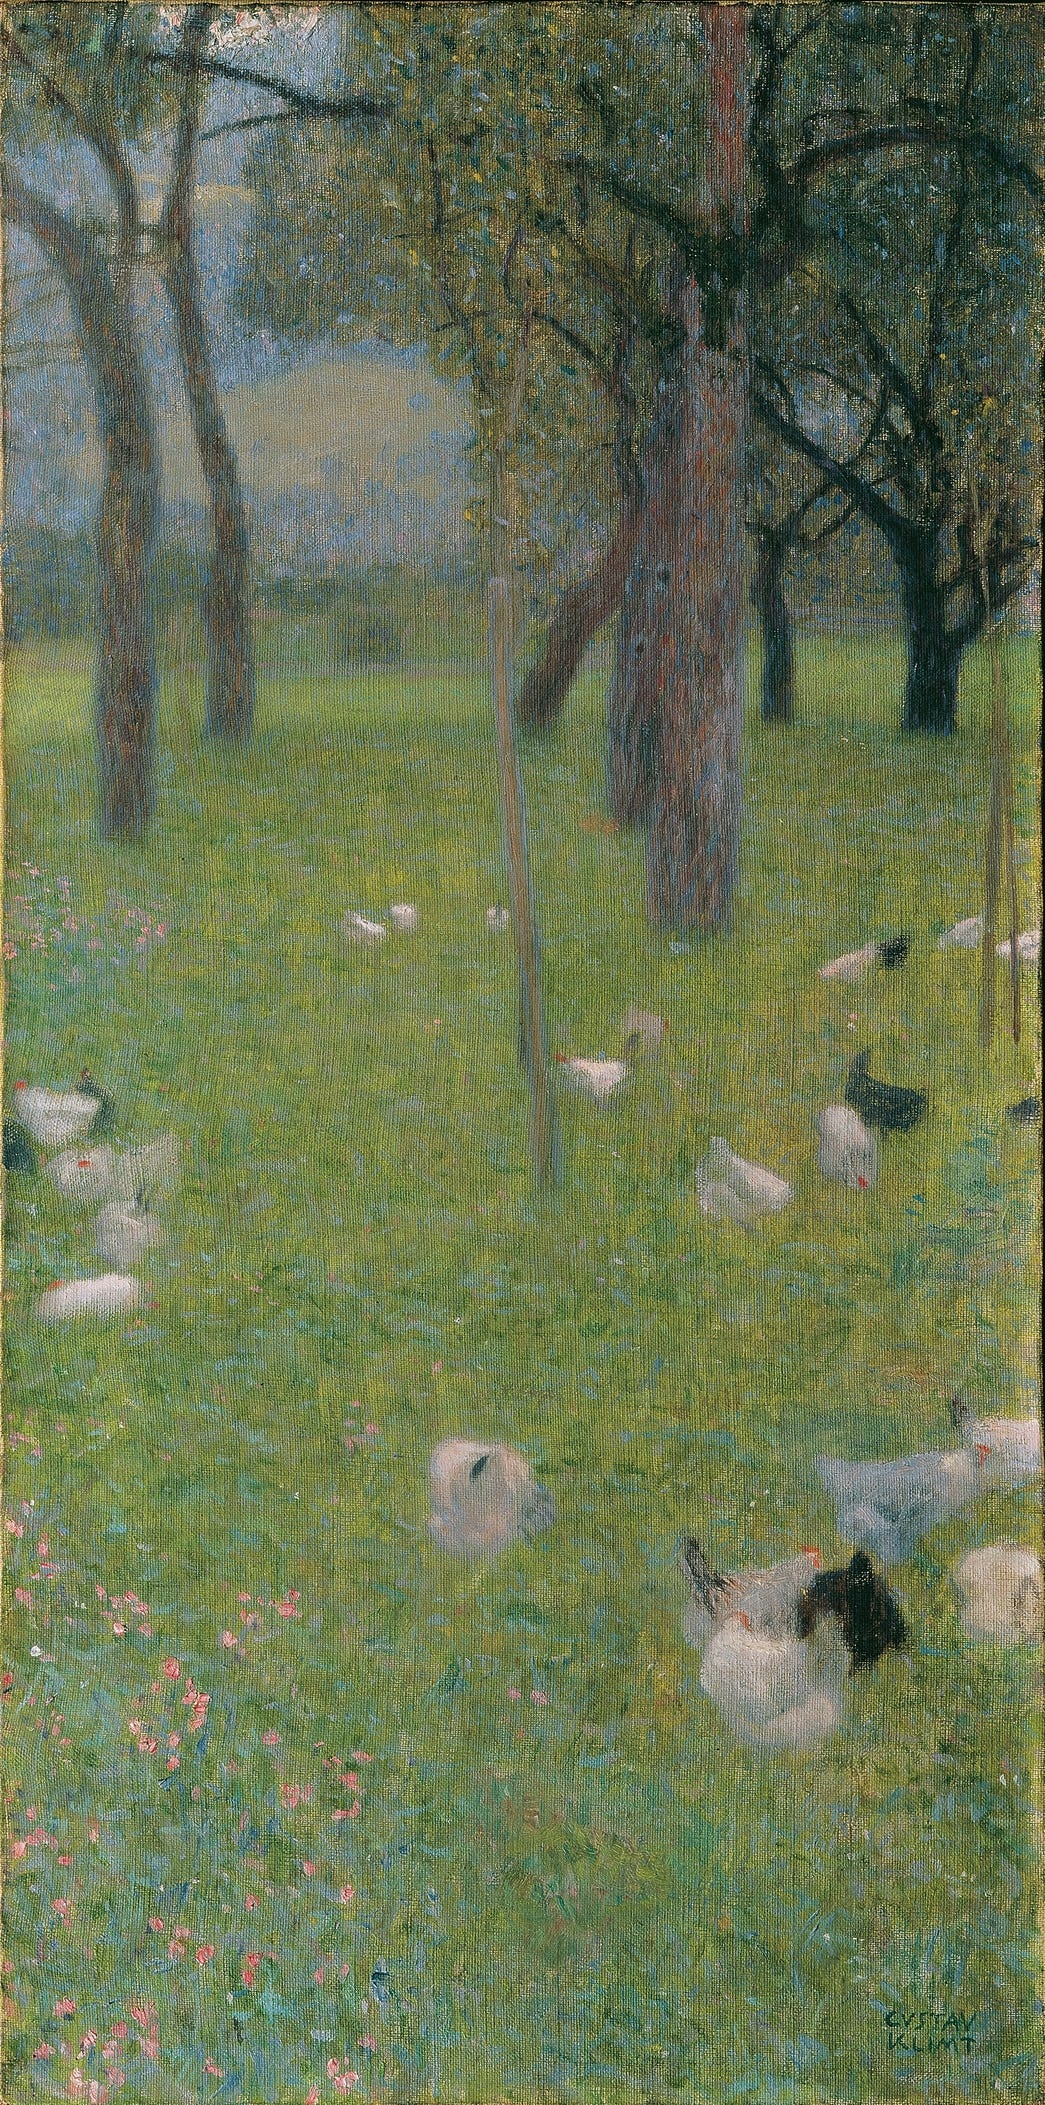 Nach dem Regen (1898) by Gustav Klimt